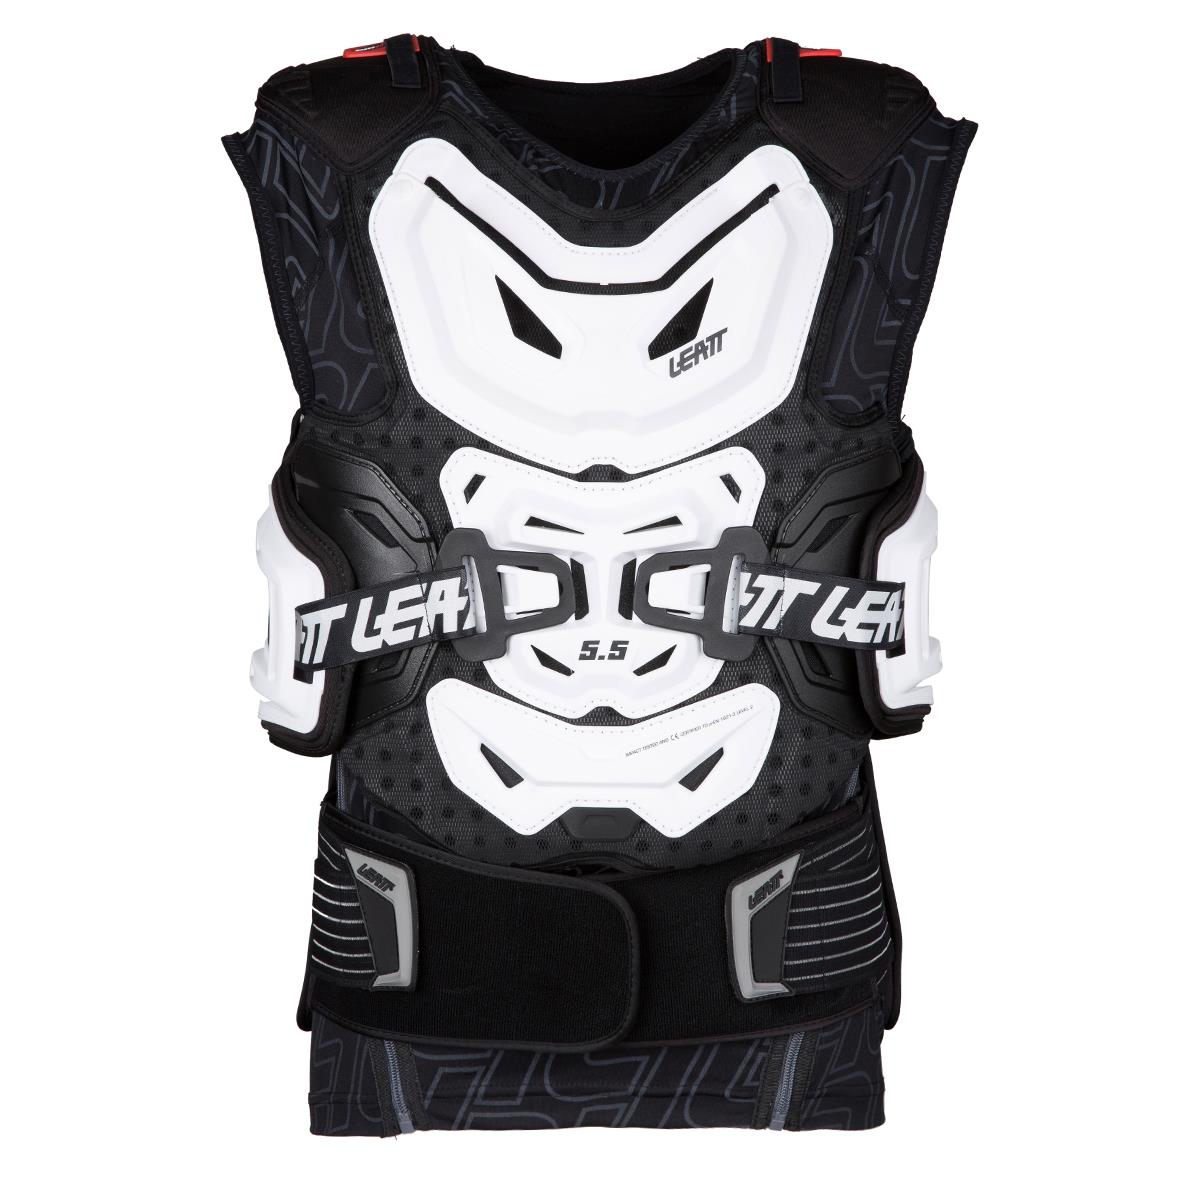 Leatt Protektorweste Body Vest 5.5 Weiß